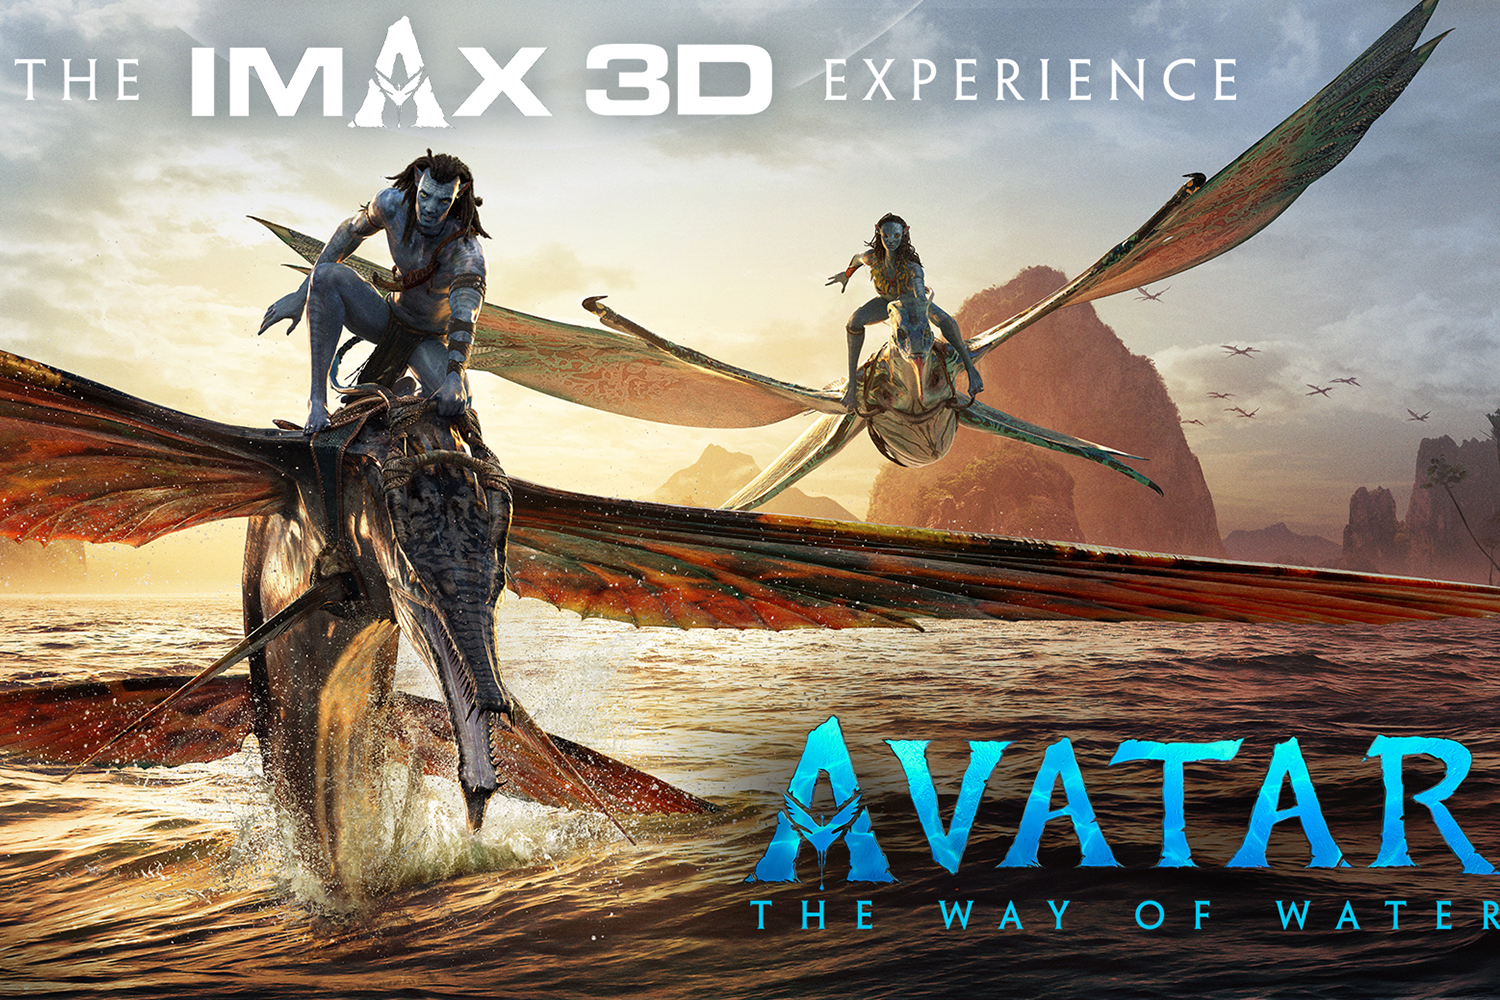 Doanh thu toàn cầu của Avatar 2 vượt mốc 2 tỷ USD  Điện ảnh  Vietnam  VietnamPlus